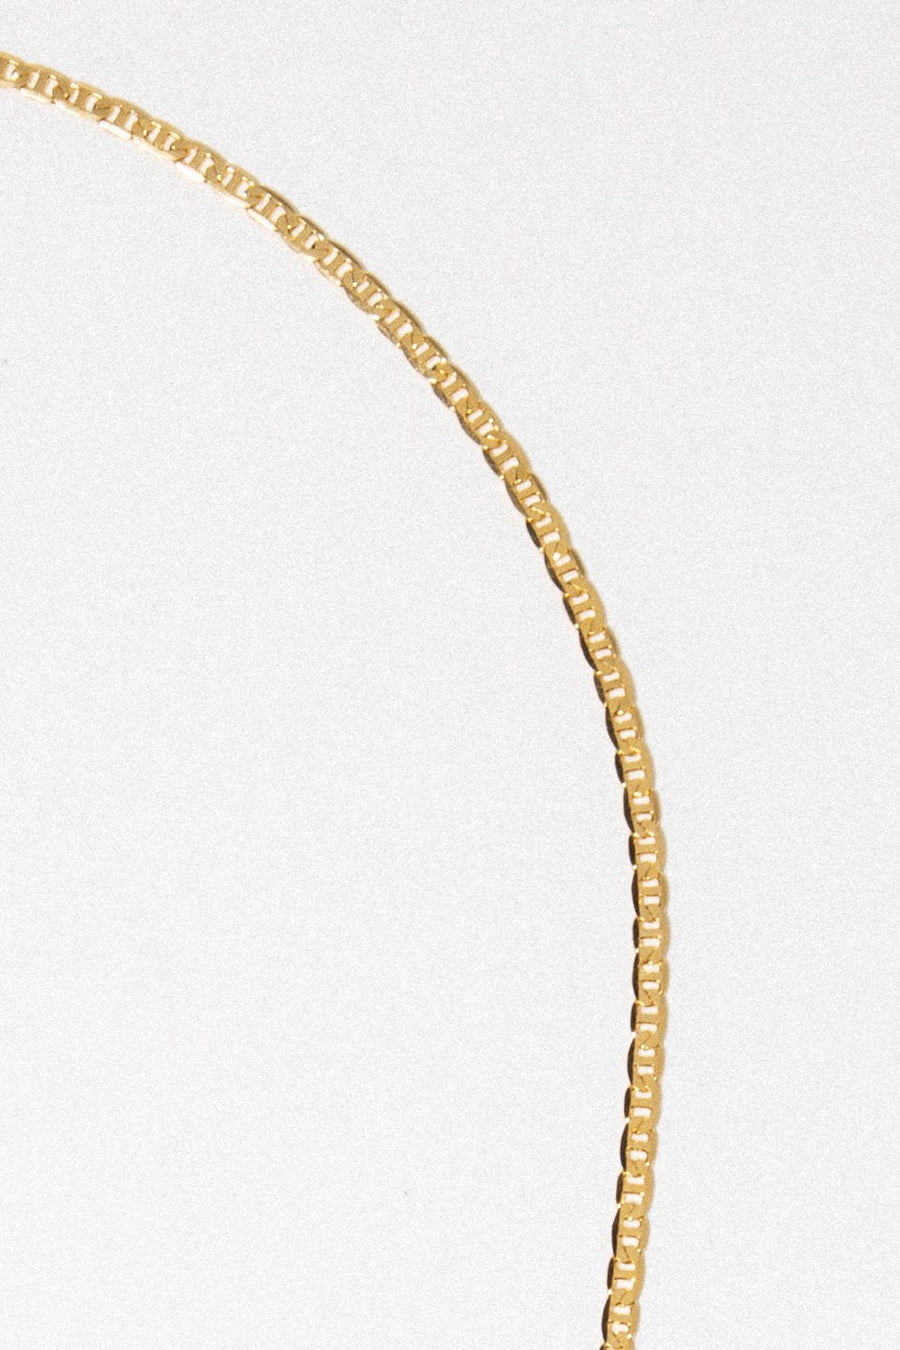 Dona Italia Jewelry Gold / 20 Inches Guccio Necklace